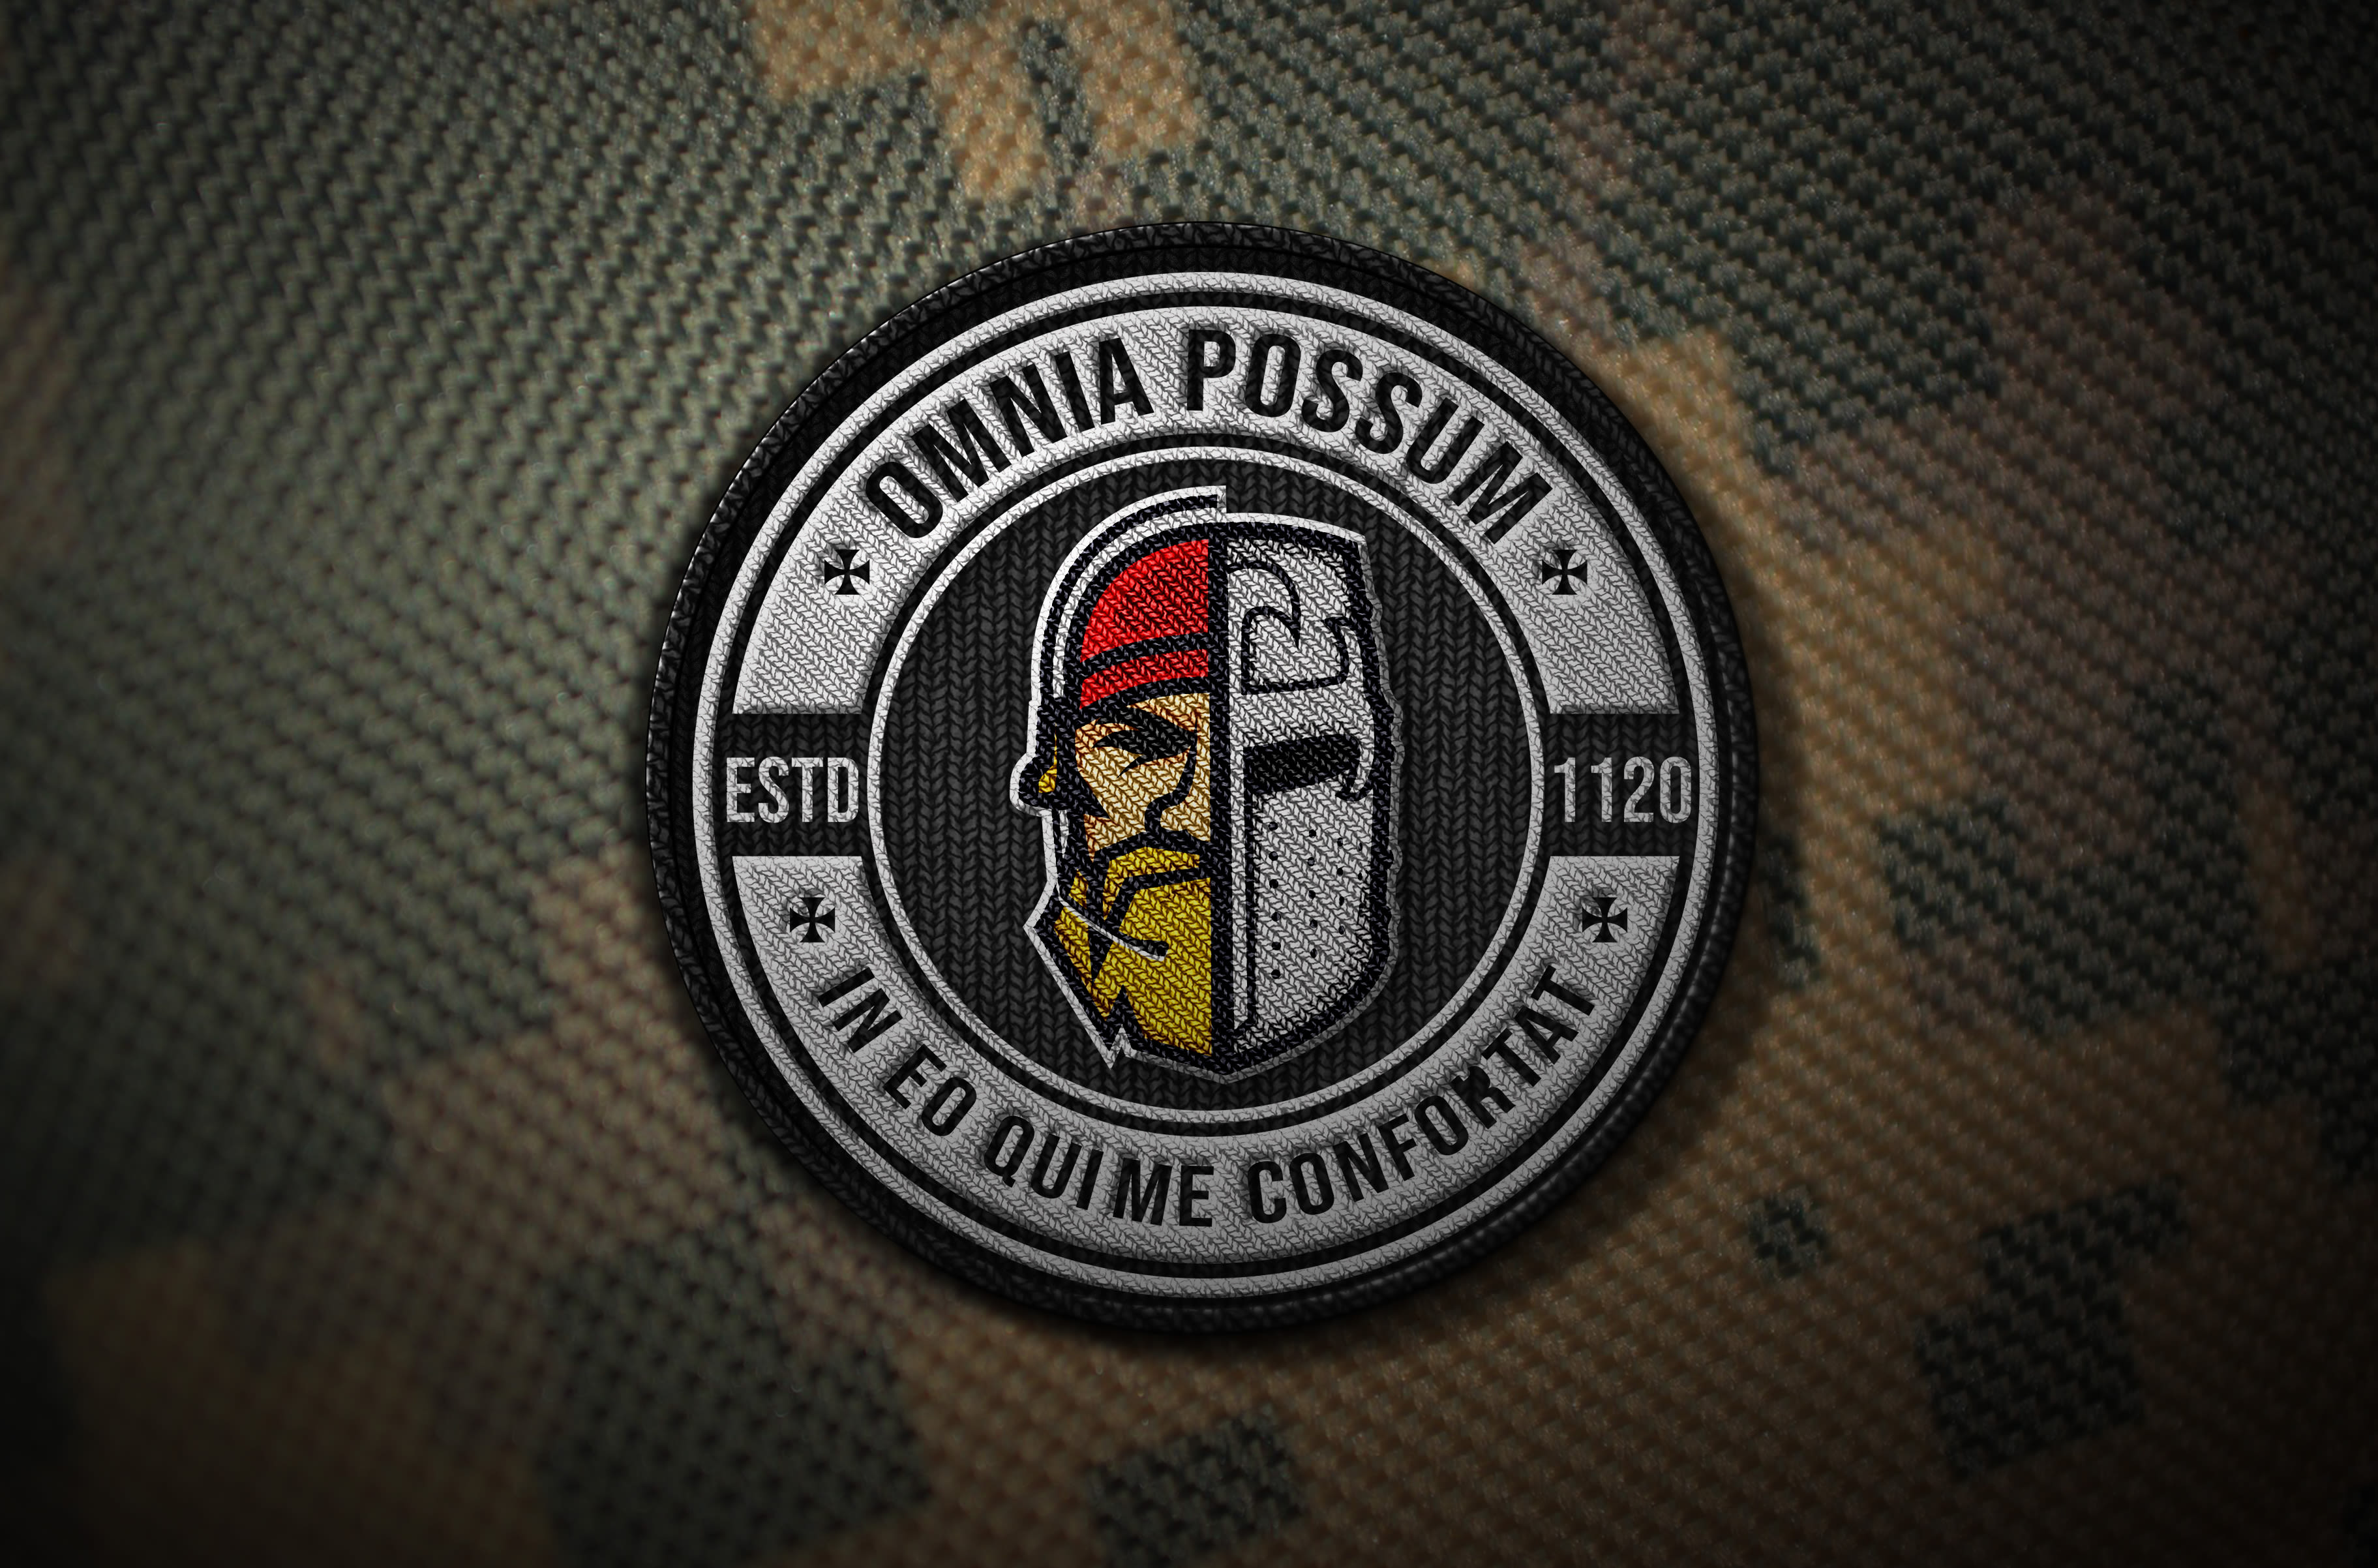 Entwerfen sie einen atemberaubenden militärisch-taktischen logo